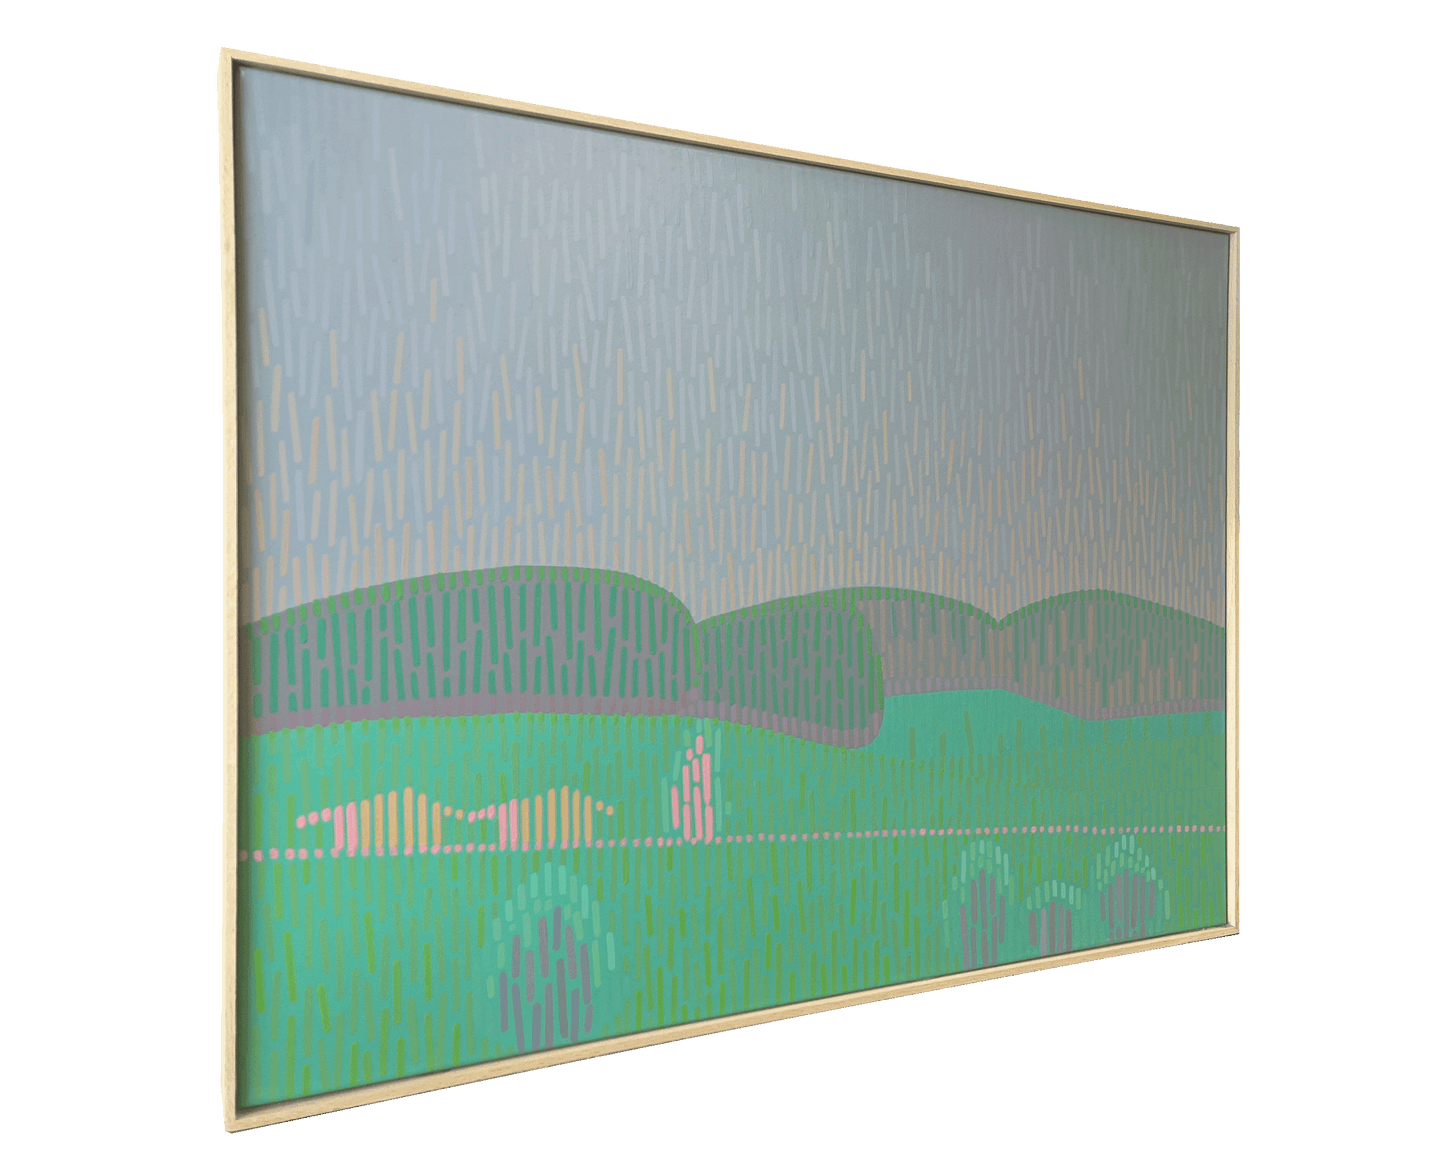 Landscape Complementary 3, unique, painting, hand-painted unique piece, 68 x 52 cm, with frame strip